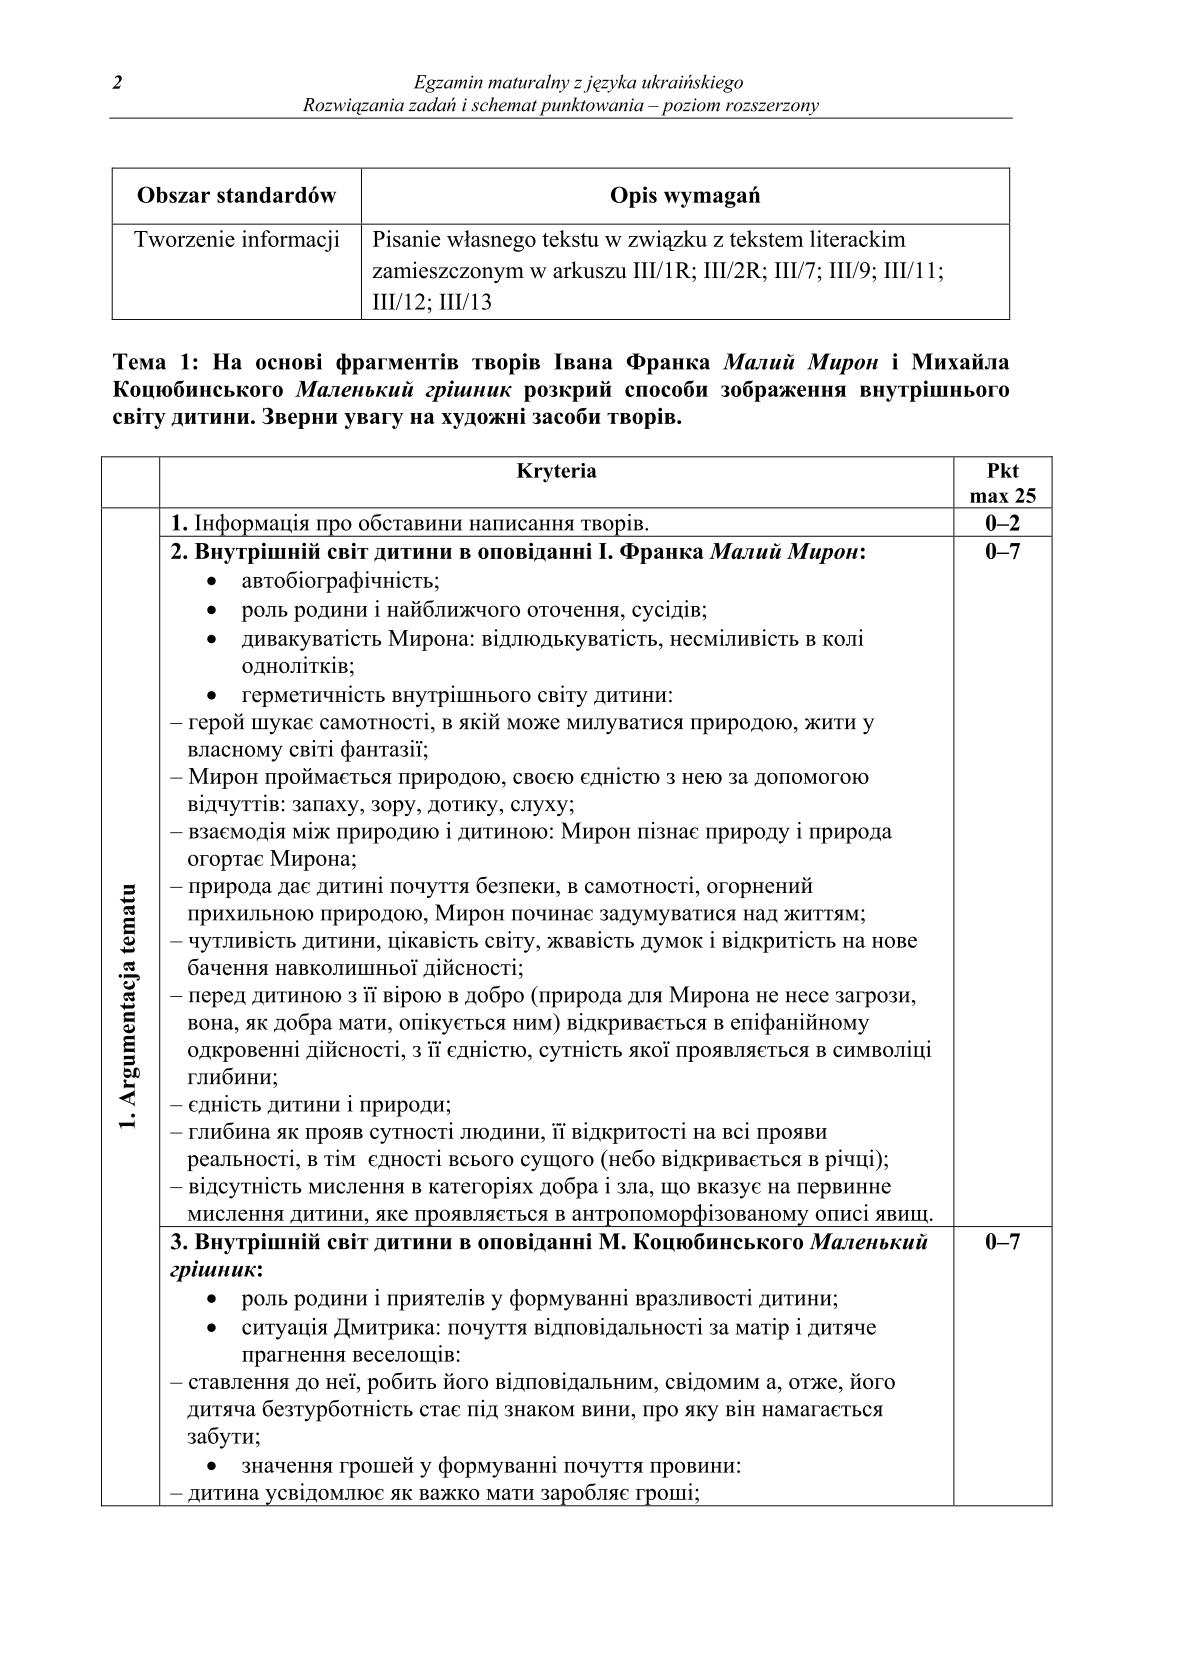 odpowiedzi-jezyk-ukrainski-poziom-rozszerzony-matura-2014-str.2